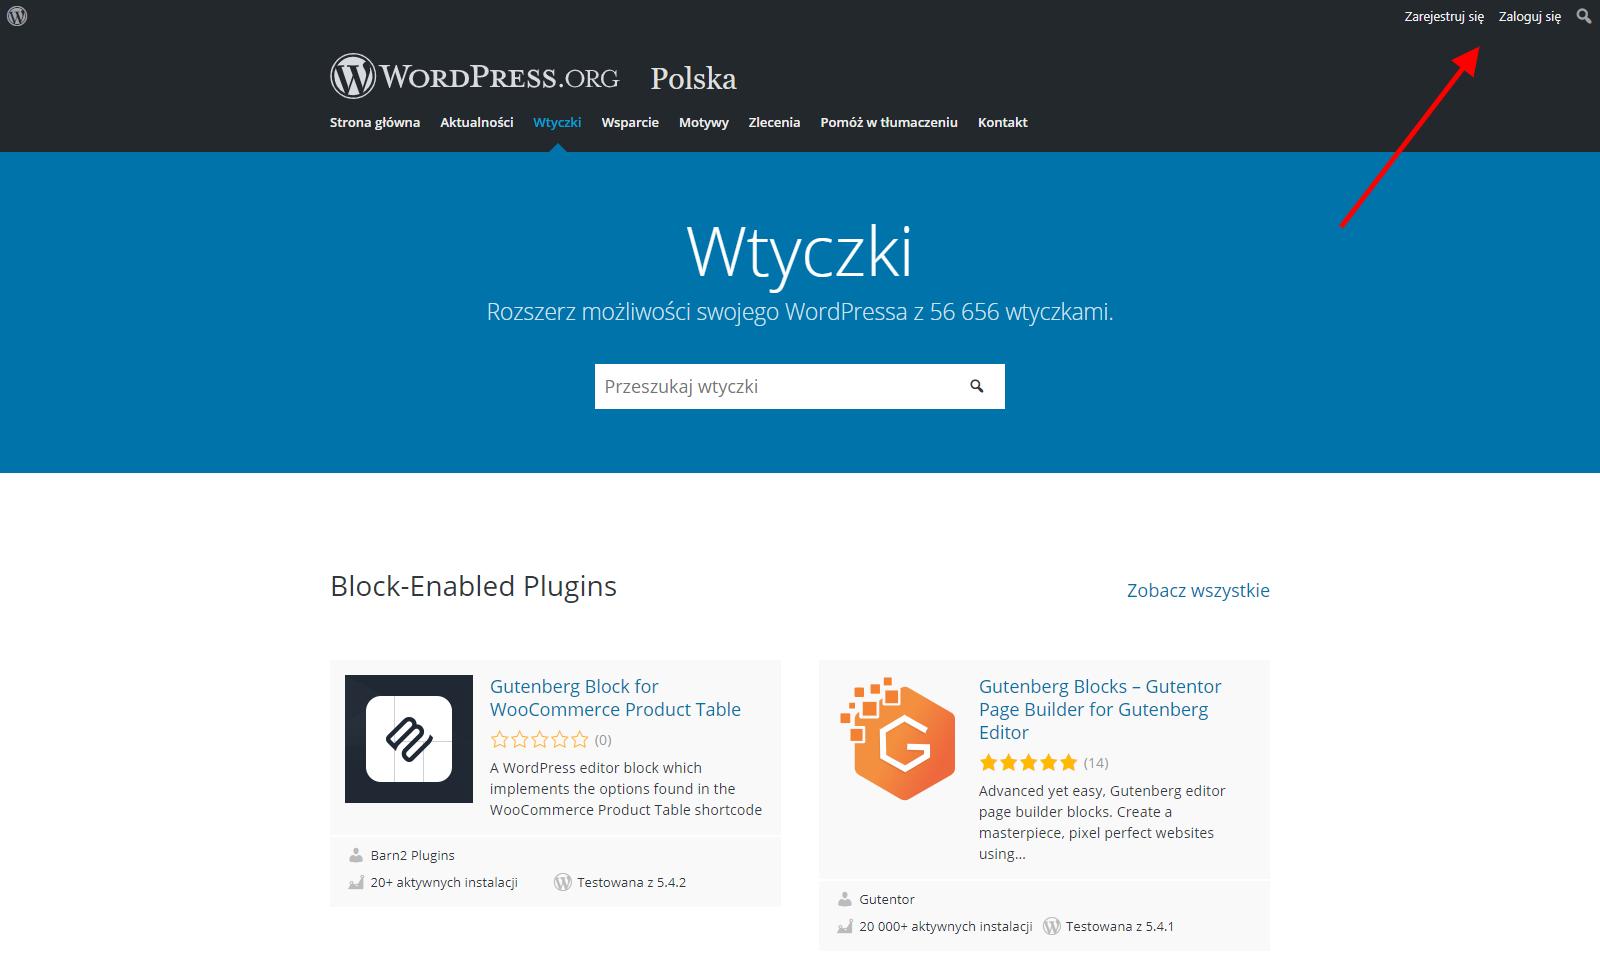 Repozytorium WordPress.org - Zakładka Wtyczki